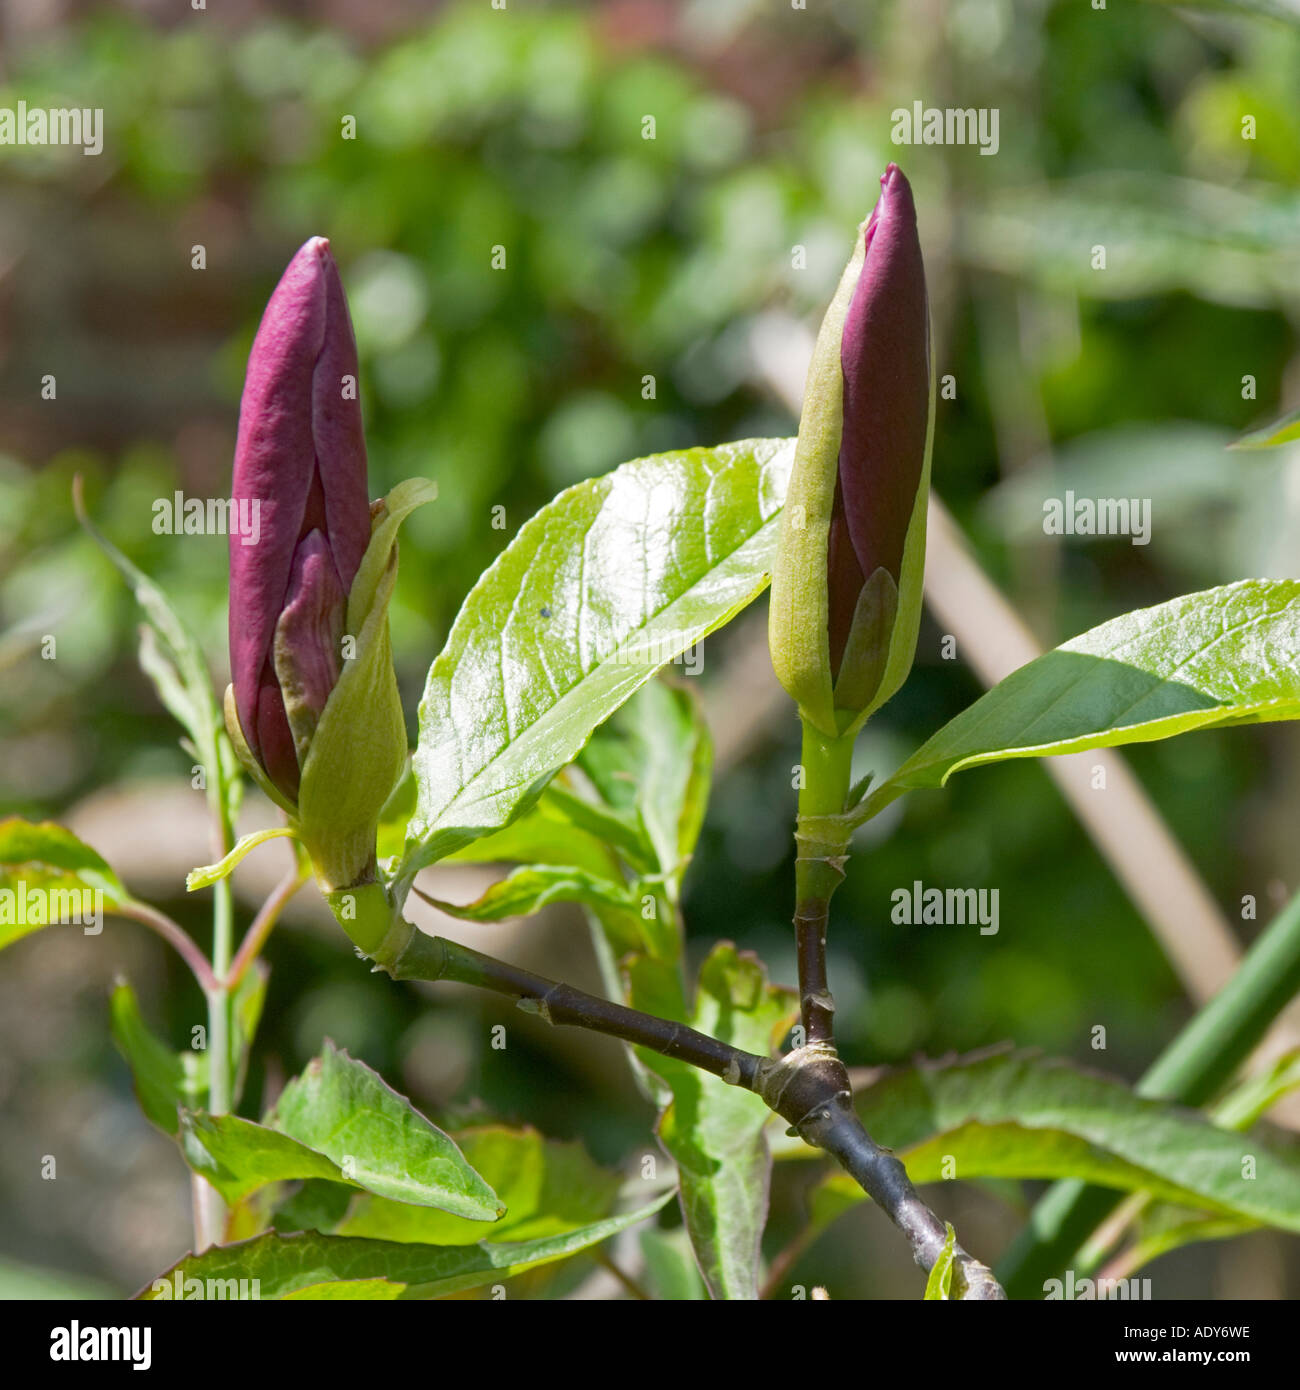 Magnolia purple liliflora Stock Photo